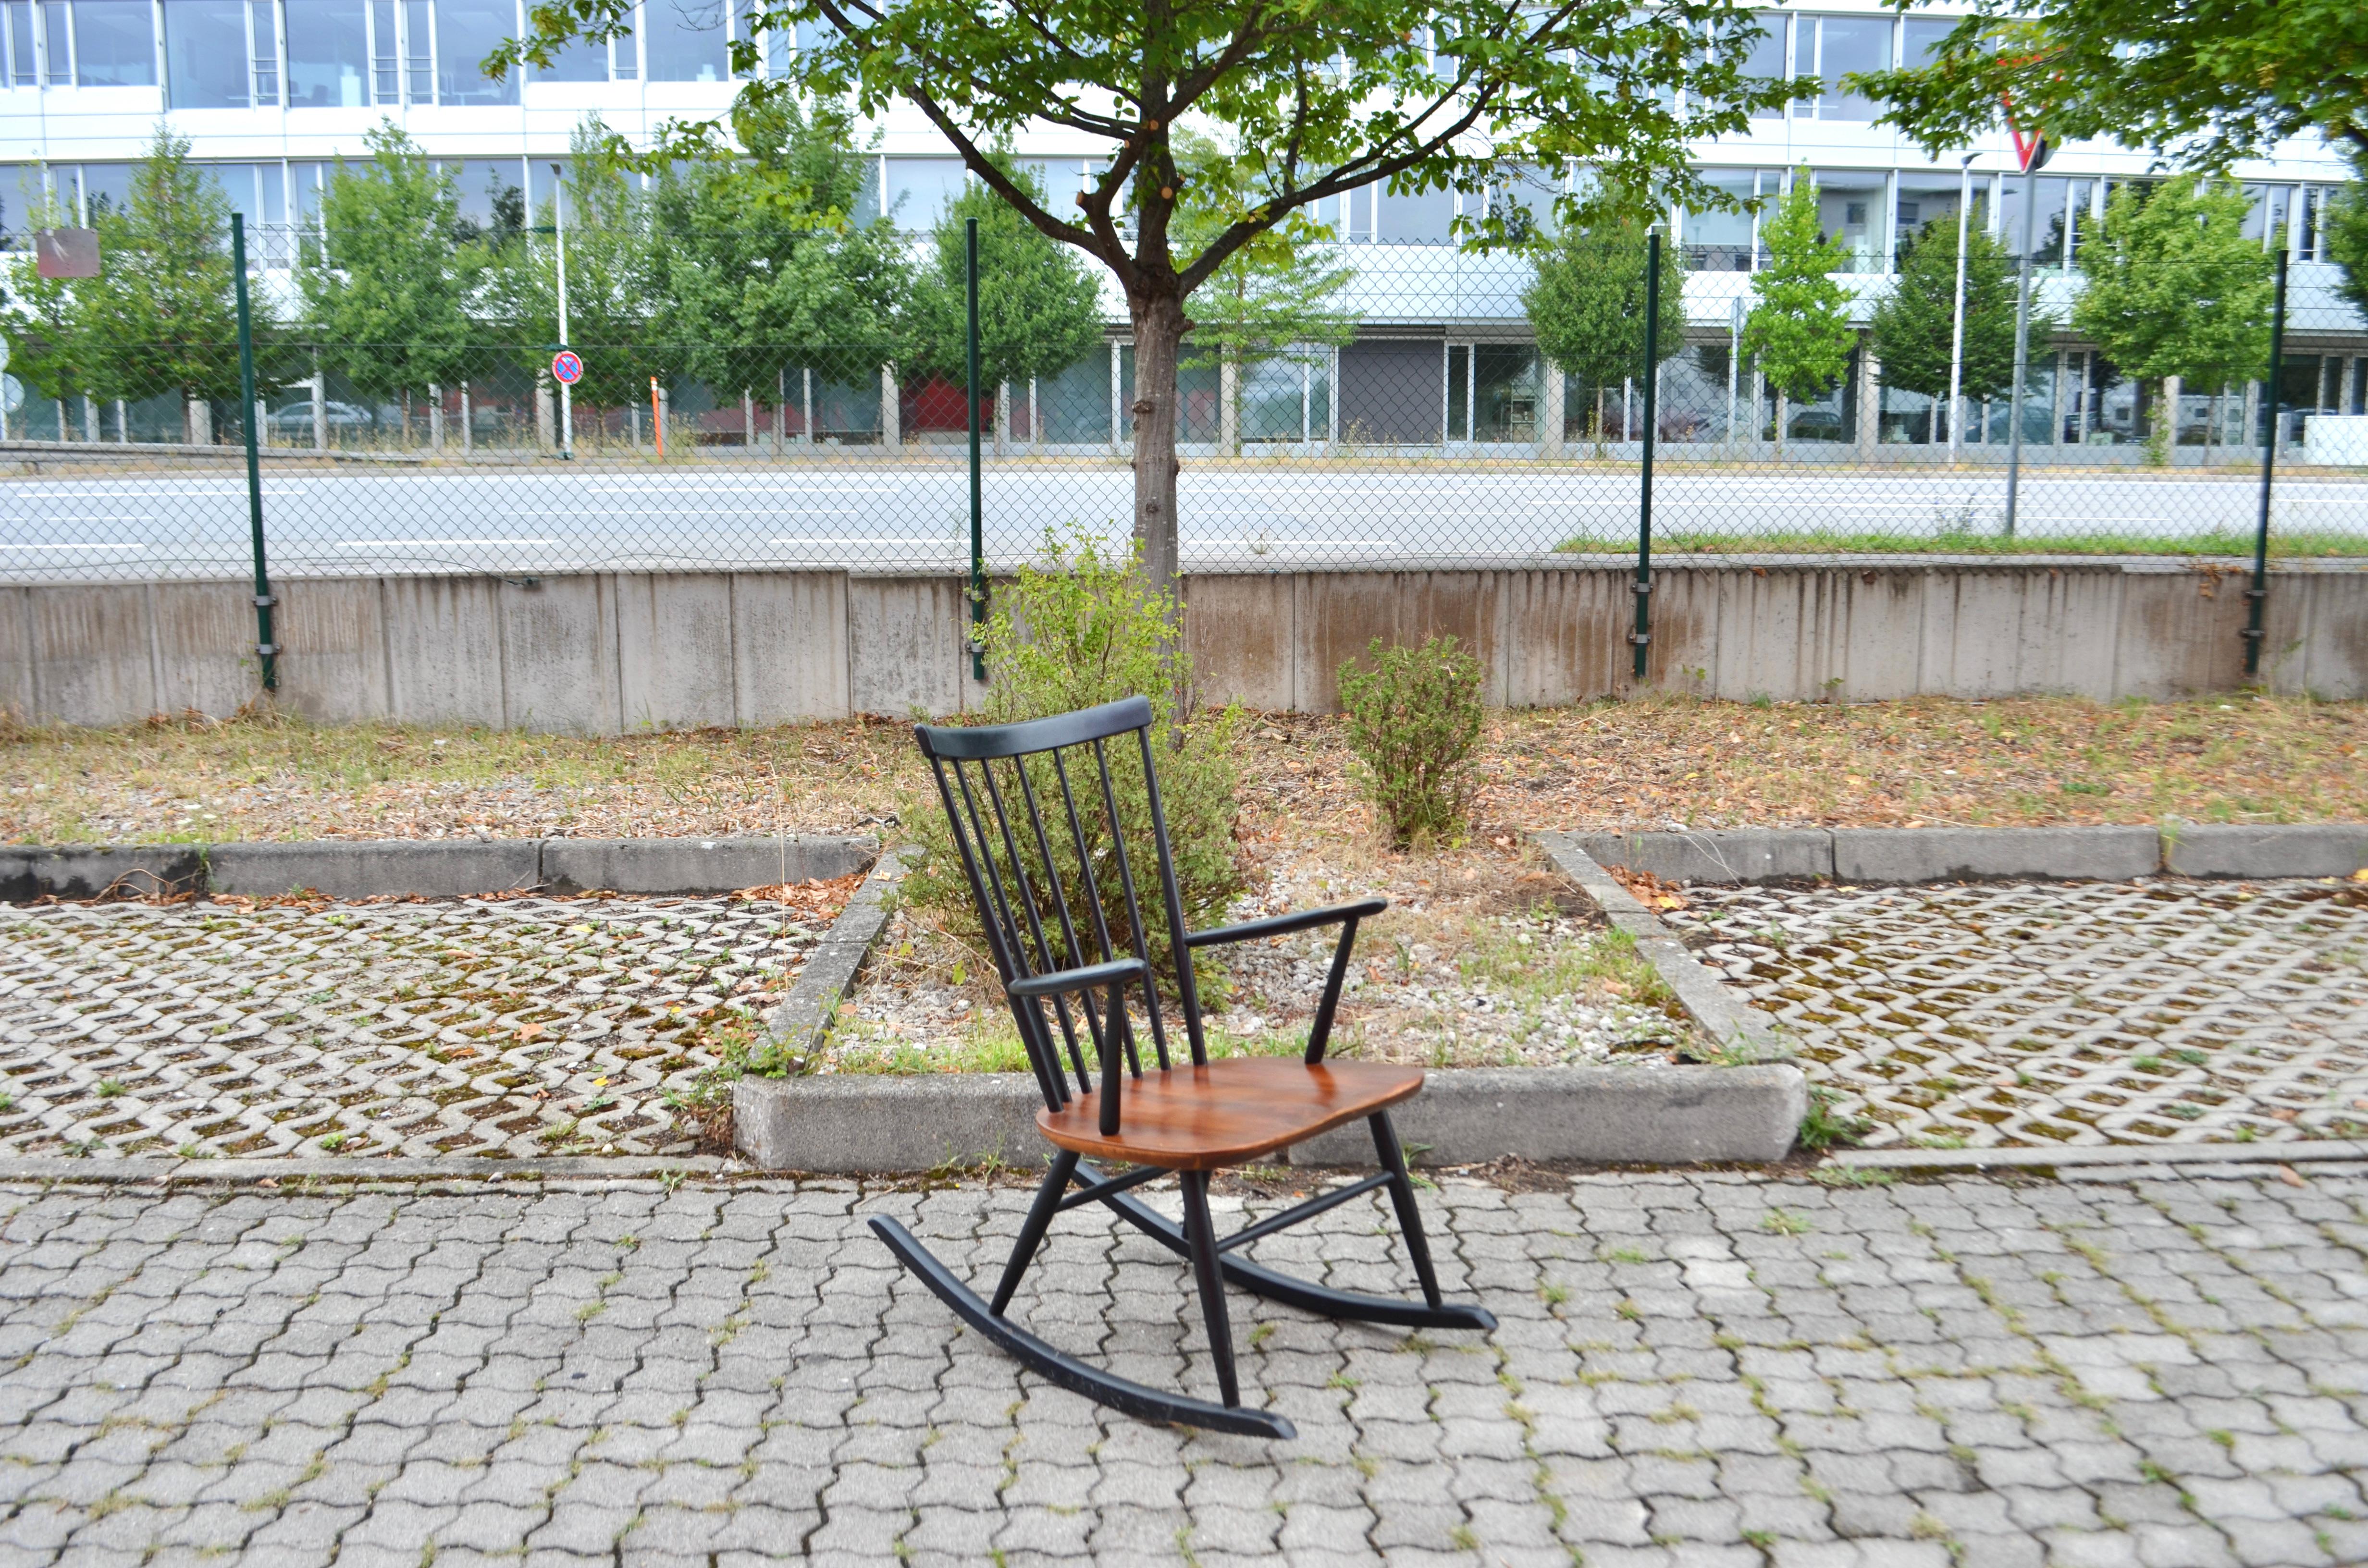 Ein skandinavischer Schaukelstuhl von Sven Erik Fryklund, hergestellt von Hagafors in Schweden.
Teakholz und schwarz lackiertes Buchenholz.
Die Armlehnen sind gut verarbeitet und der Stuhl ist bequem.
Schöne Patina auf den Armlehnen.